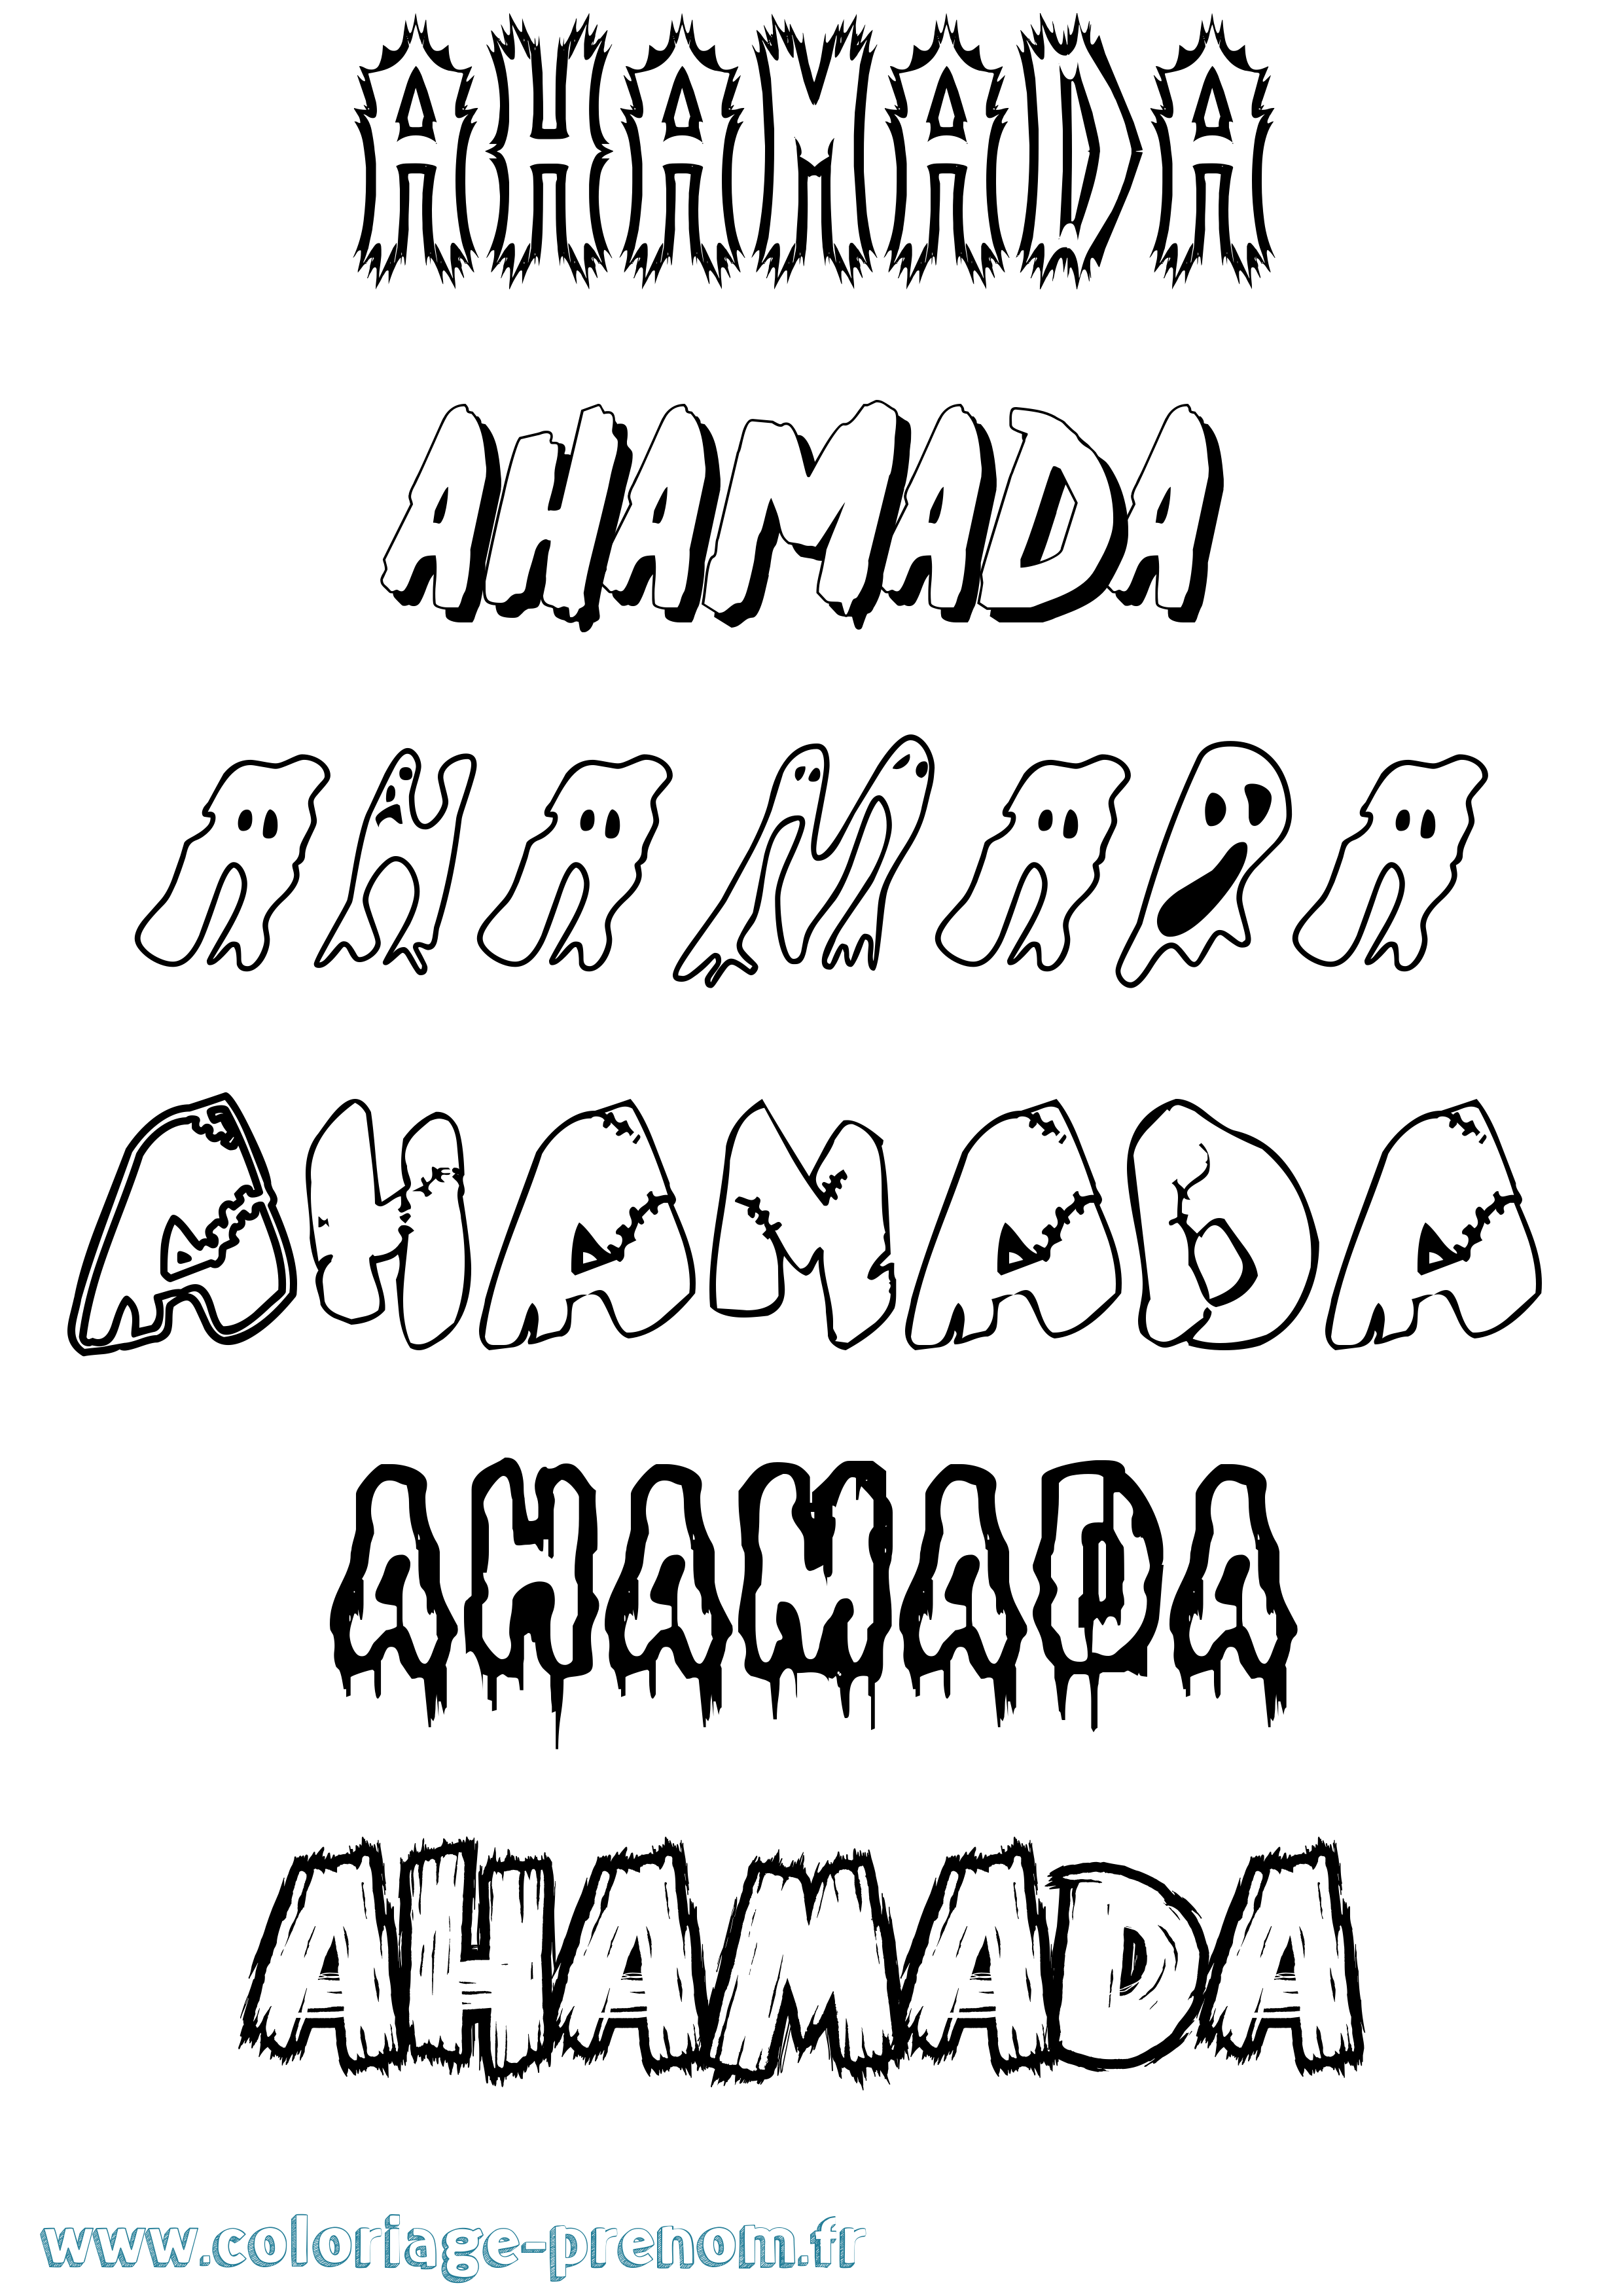 Coloriage prénom Ahamada Frisson